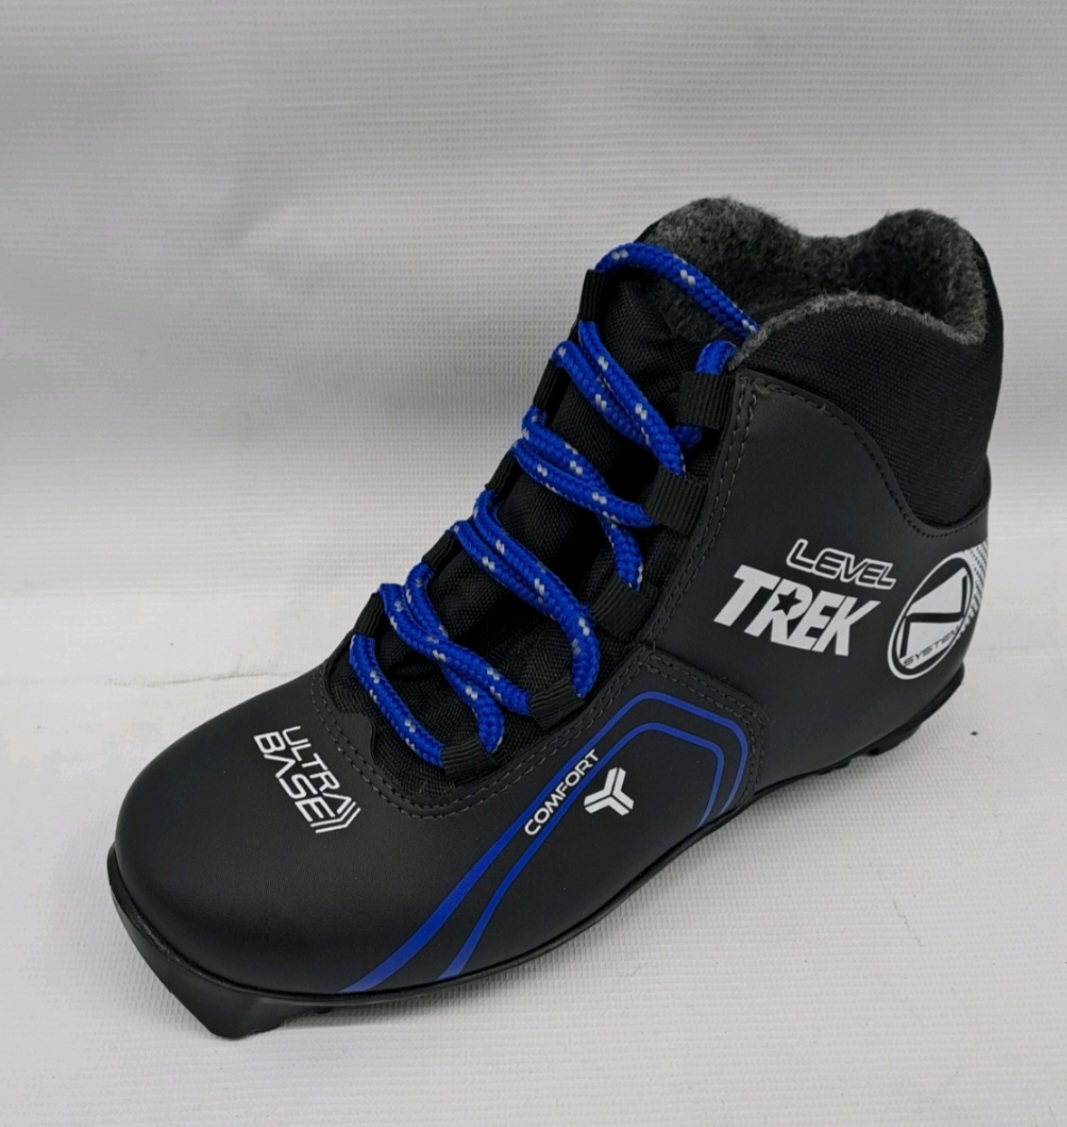 Ботинки лыжные TREK Level 3 черный лого синий RU39, EU40, CM25                                             